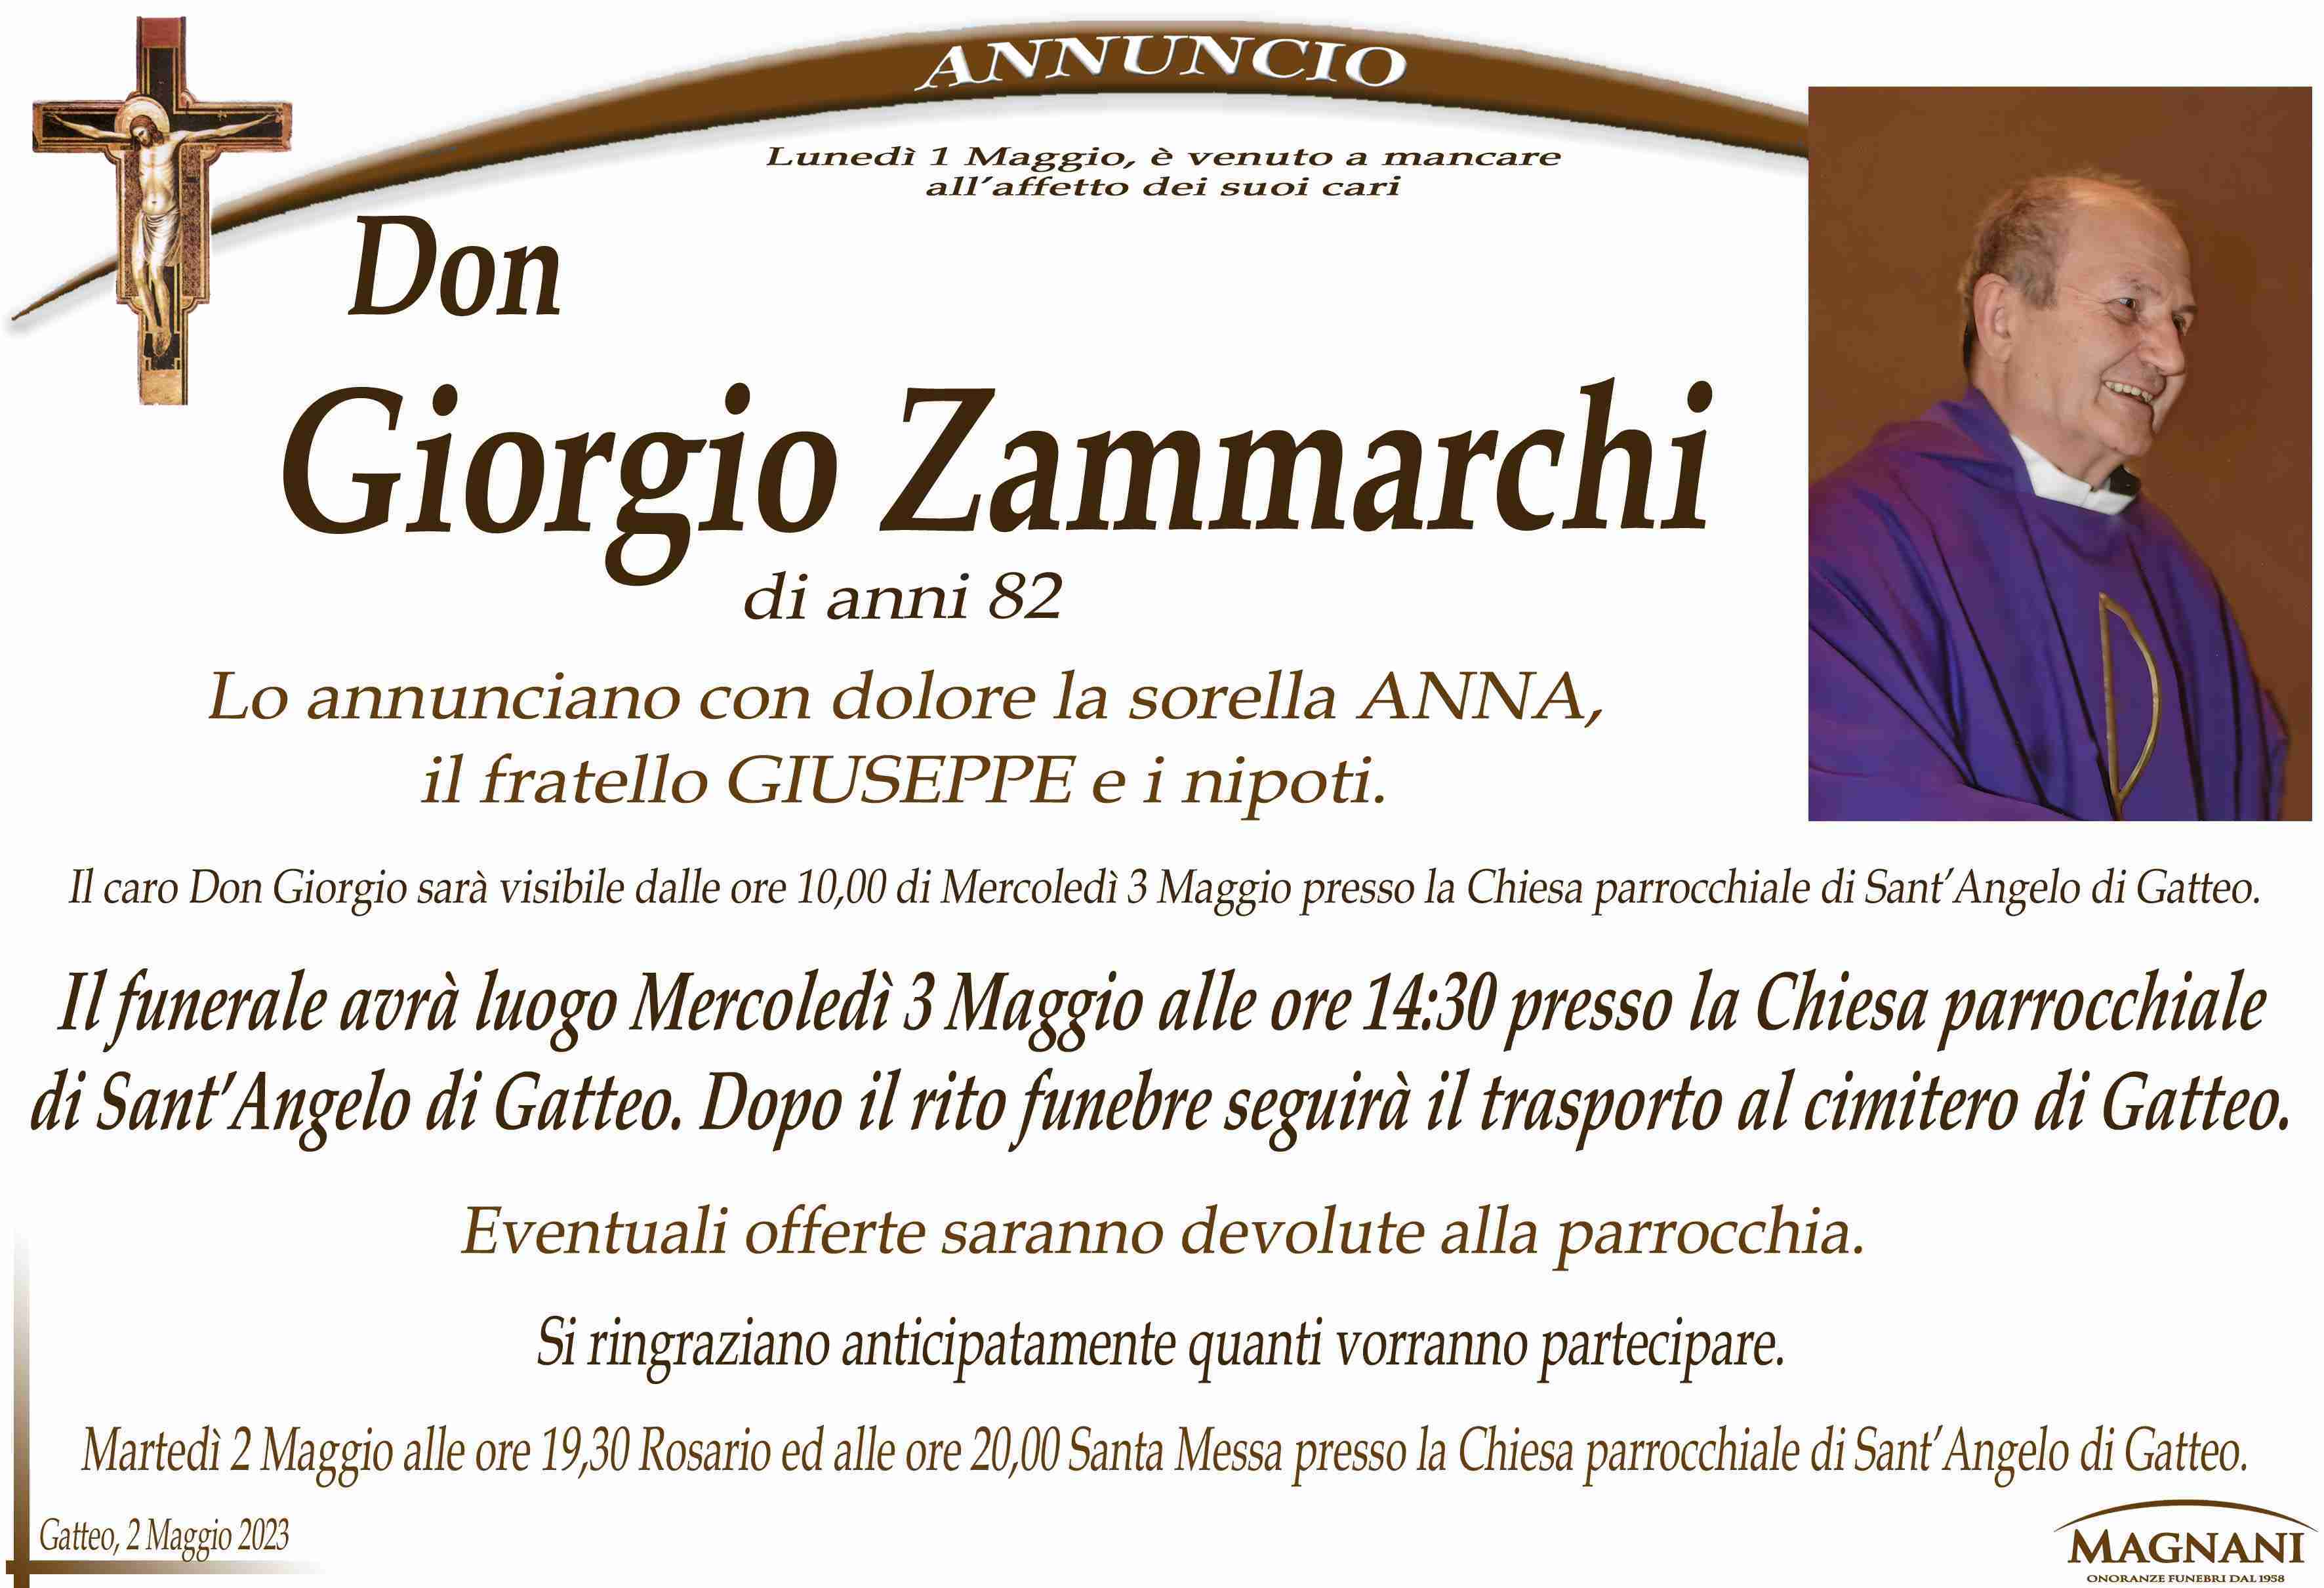 Don Giorgio Zammarchi